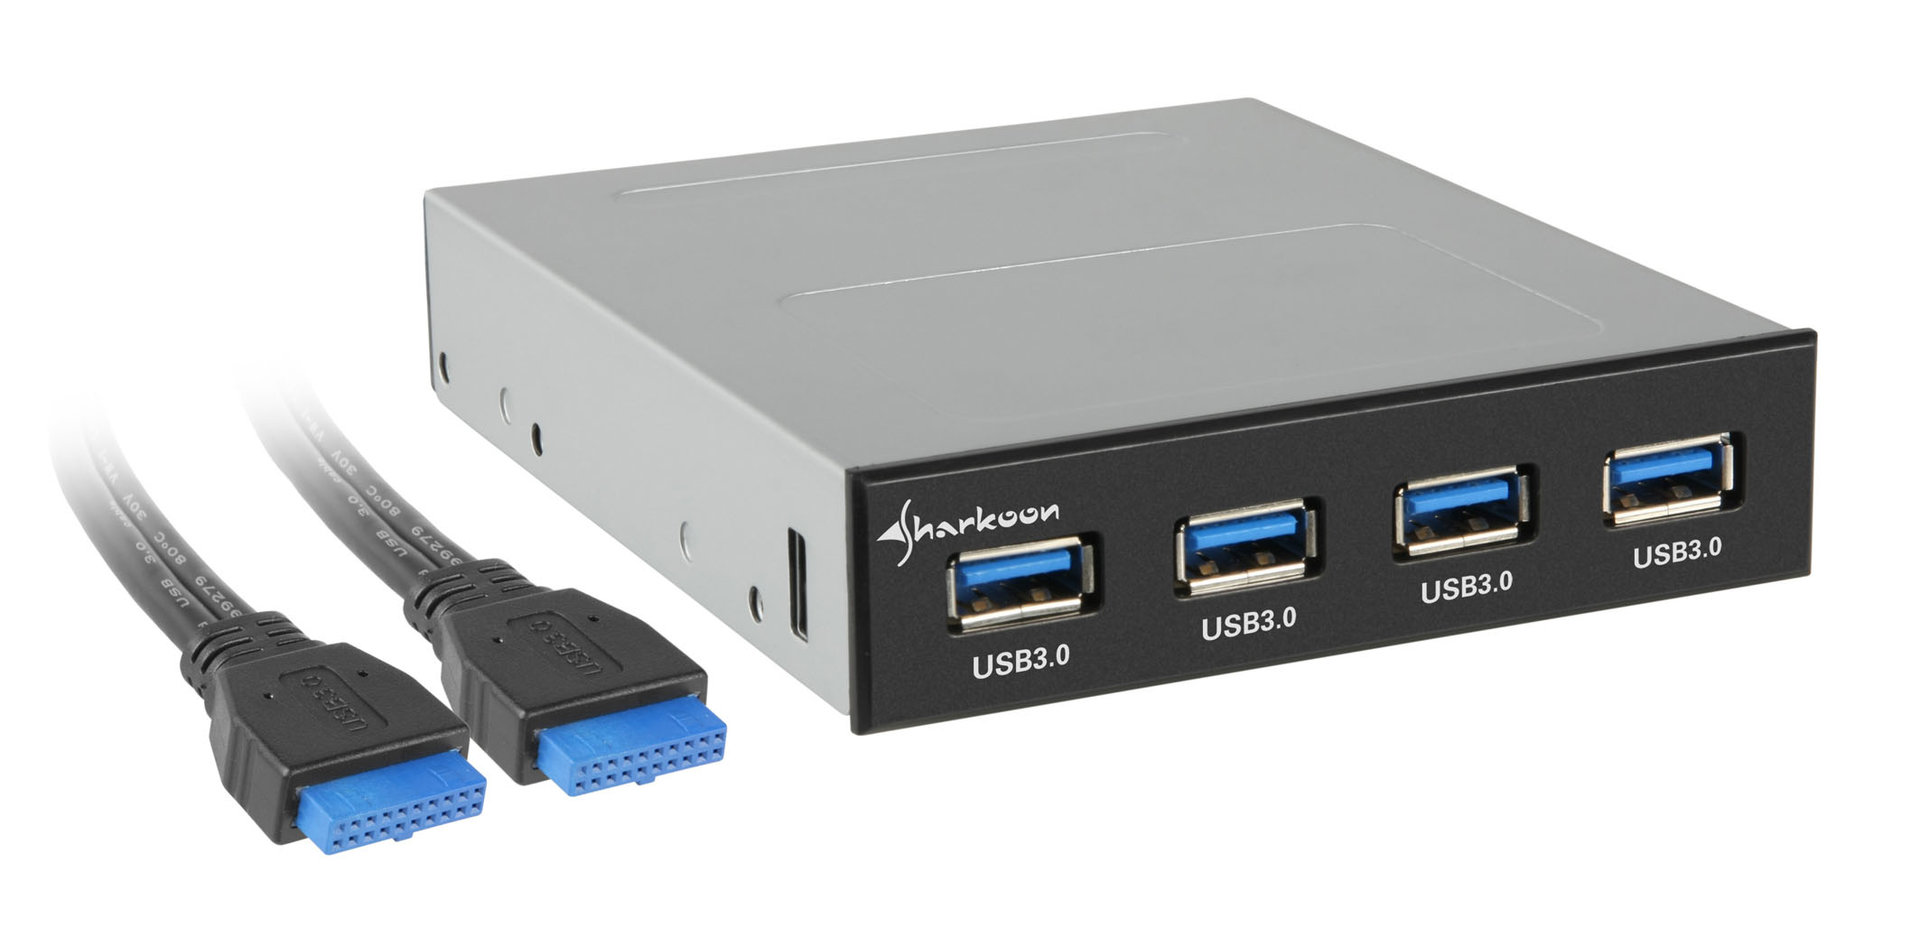 3.0 3.3. USB 3,0 hdd3 Dock. USB 3.0 f1802. SAS USB 3.0. USB 3.0 И USB 2.0.